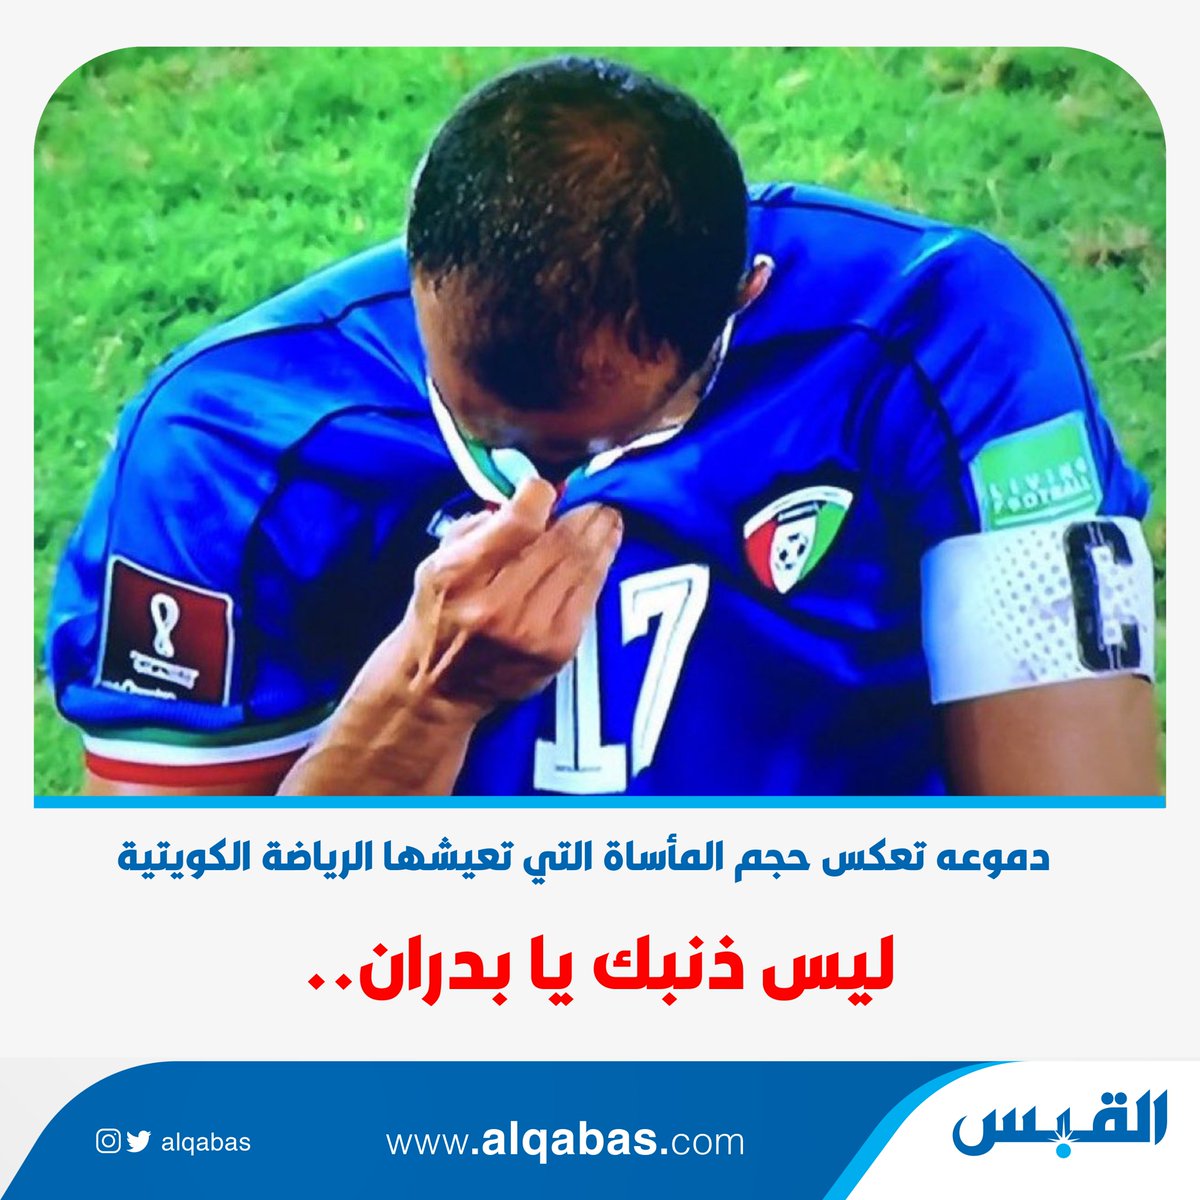 ليس ذنبك يا بدران.. • دموعه تعكس حجم المأساة التي تعيشها الرياضة الكويتية بدر المطوع